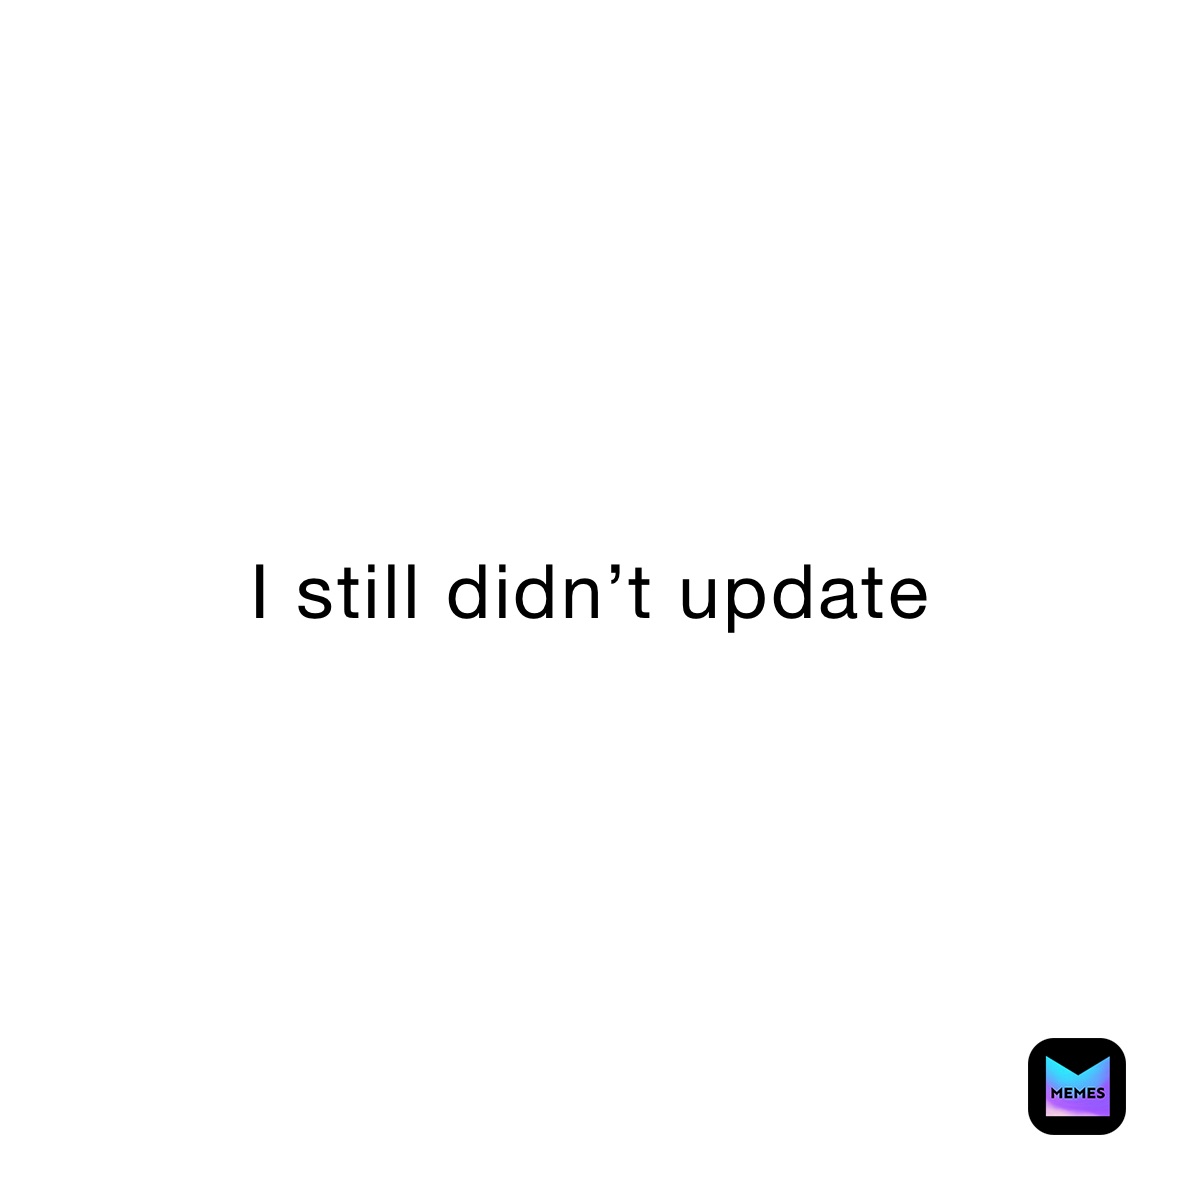 I still didn’t update